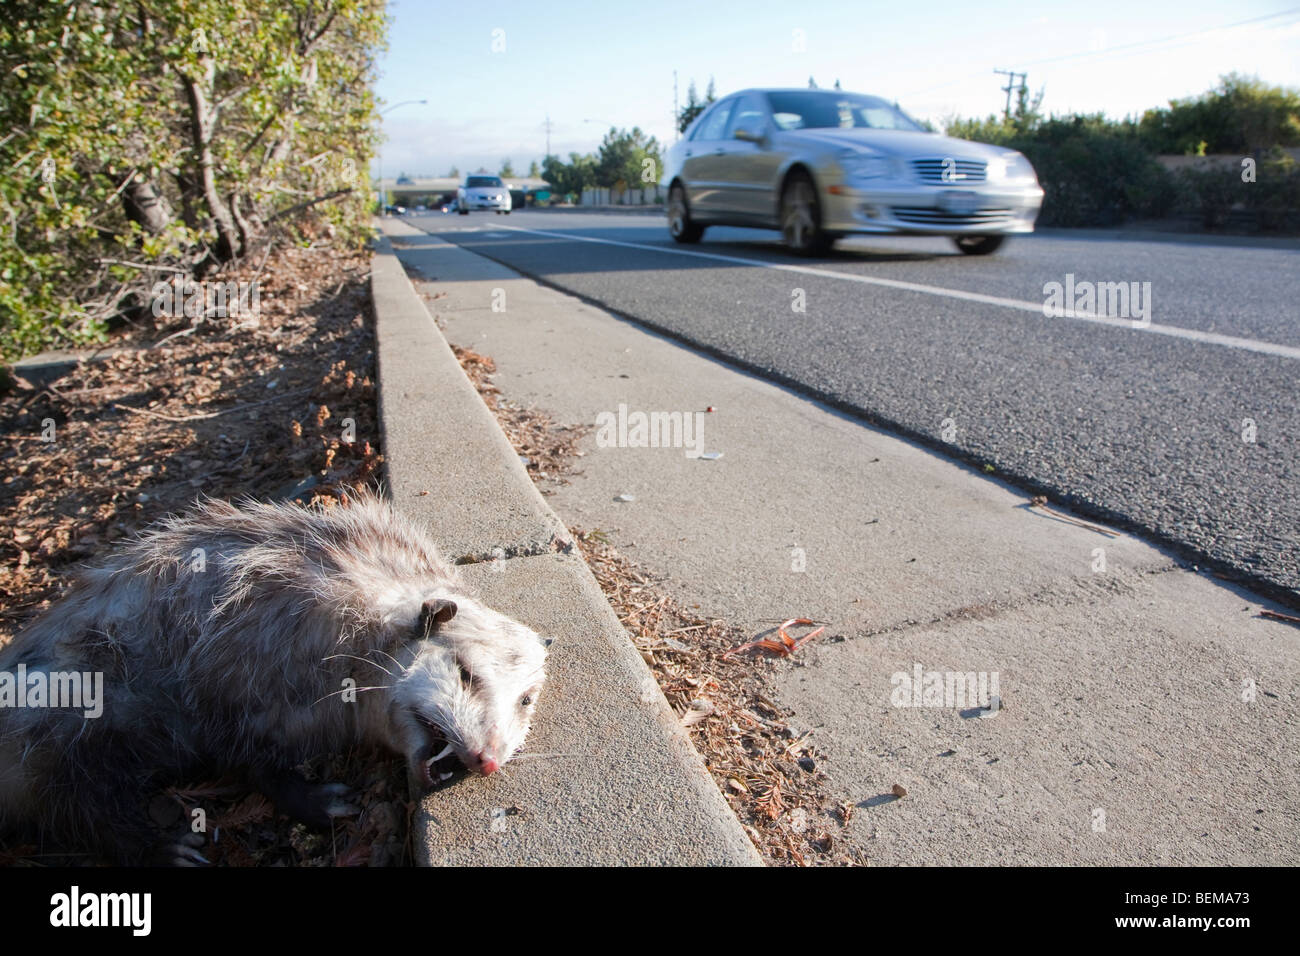 Einem niedrigen Winkel Blick auf einen Roadkill Possum am Straßenrand. Ein Auto im Hintergrund. Cupertino, Kalifornien, USA Stockfoto